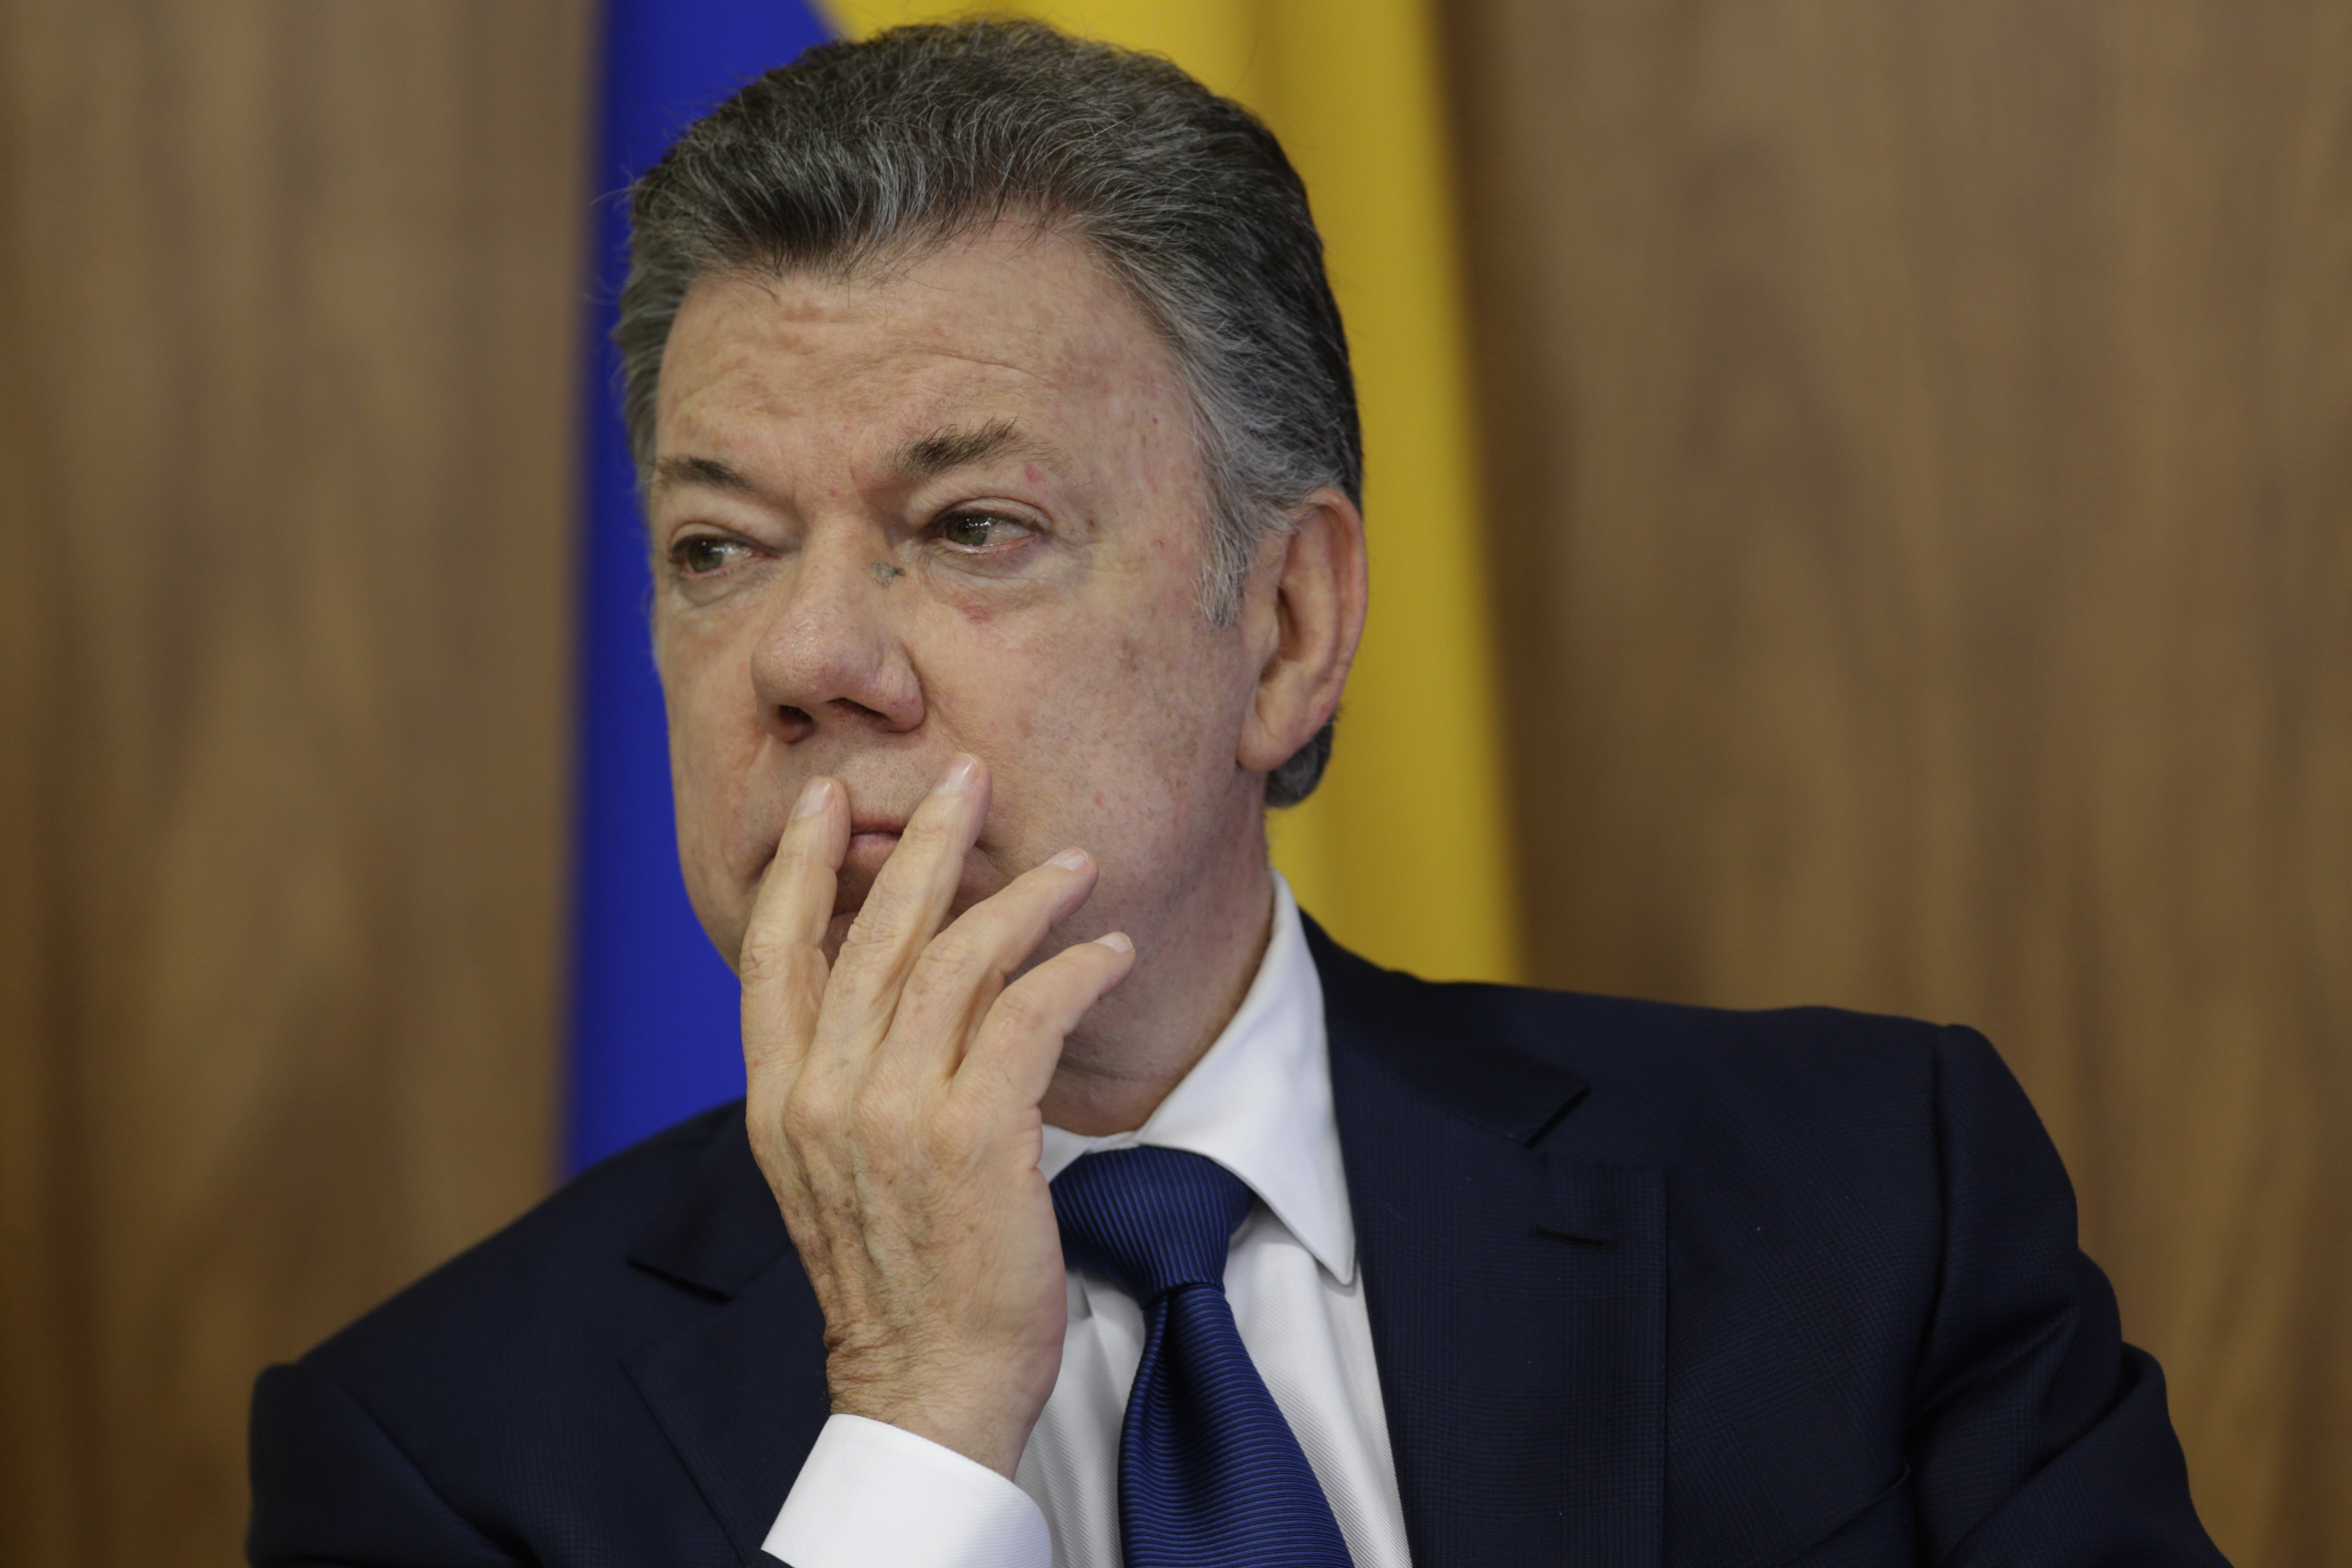 El presidente de Colombia, Juan Manuel Santos, expresó su solidaridad con los familiares de las víctimas del atentado.